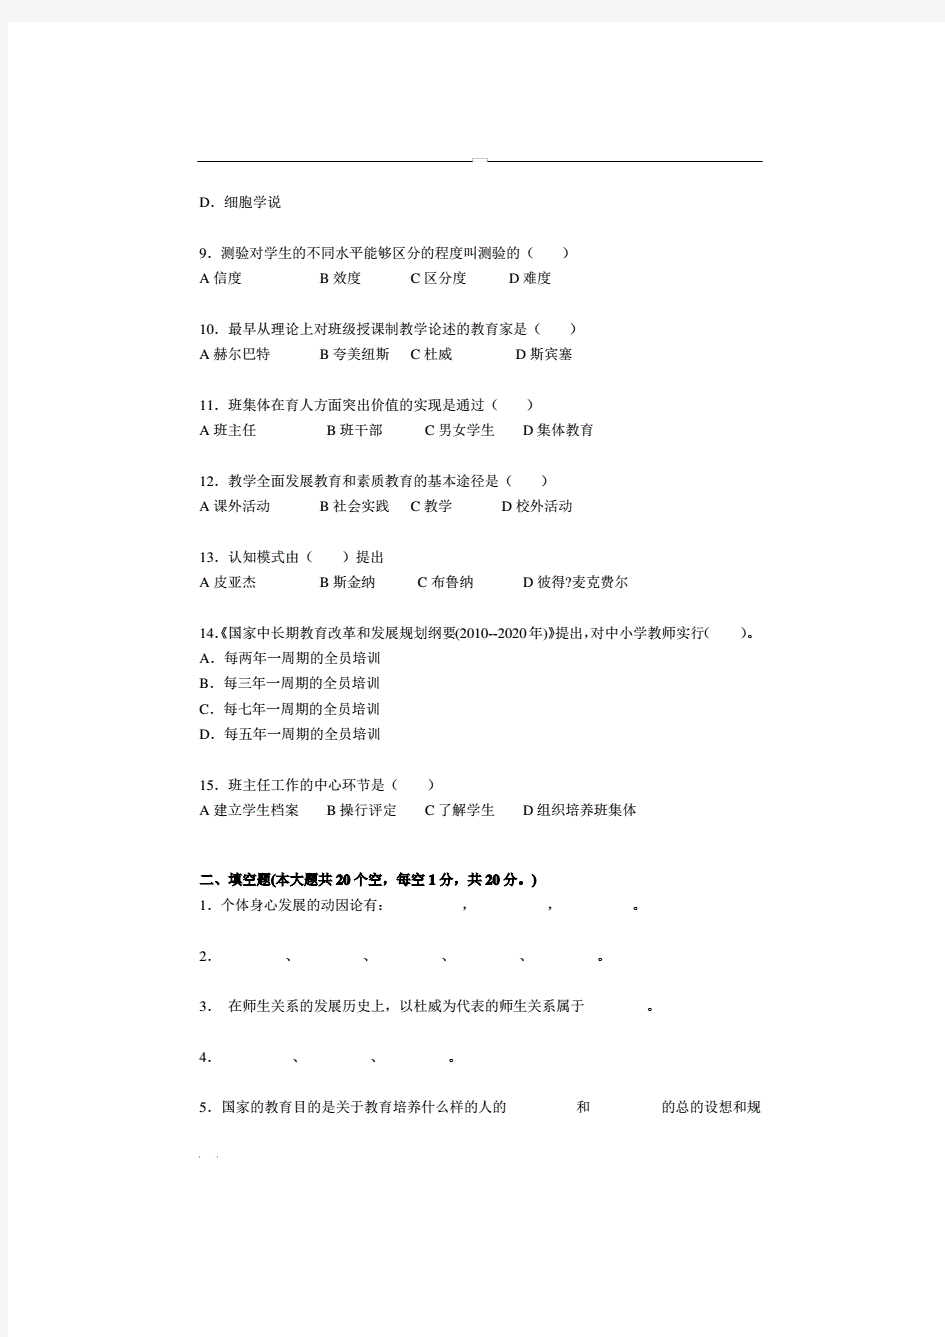 2017年四川省教师资格证考试试题